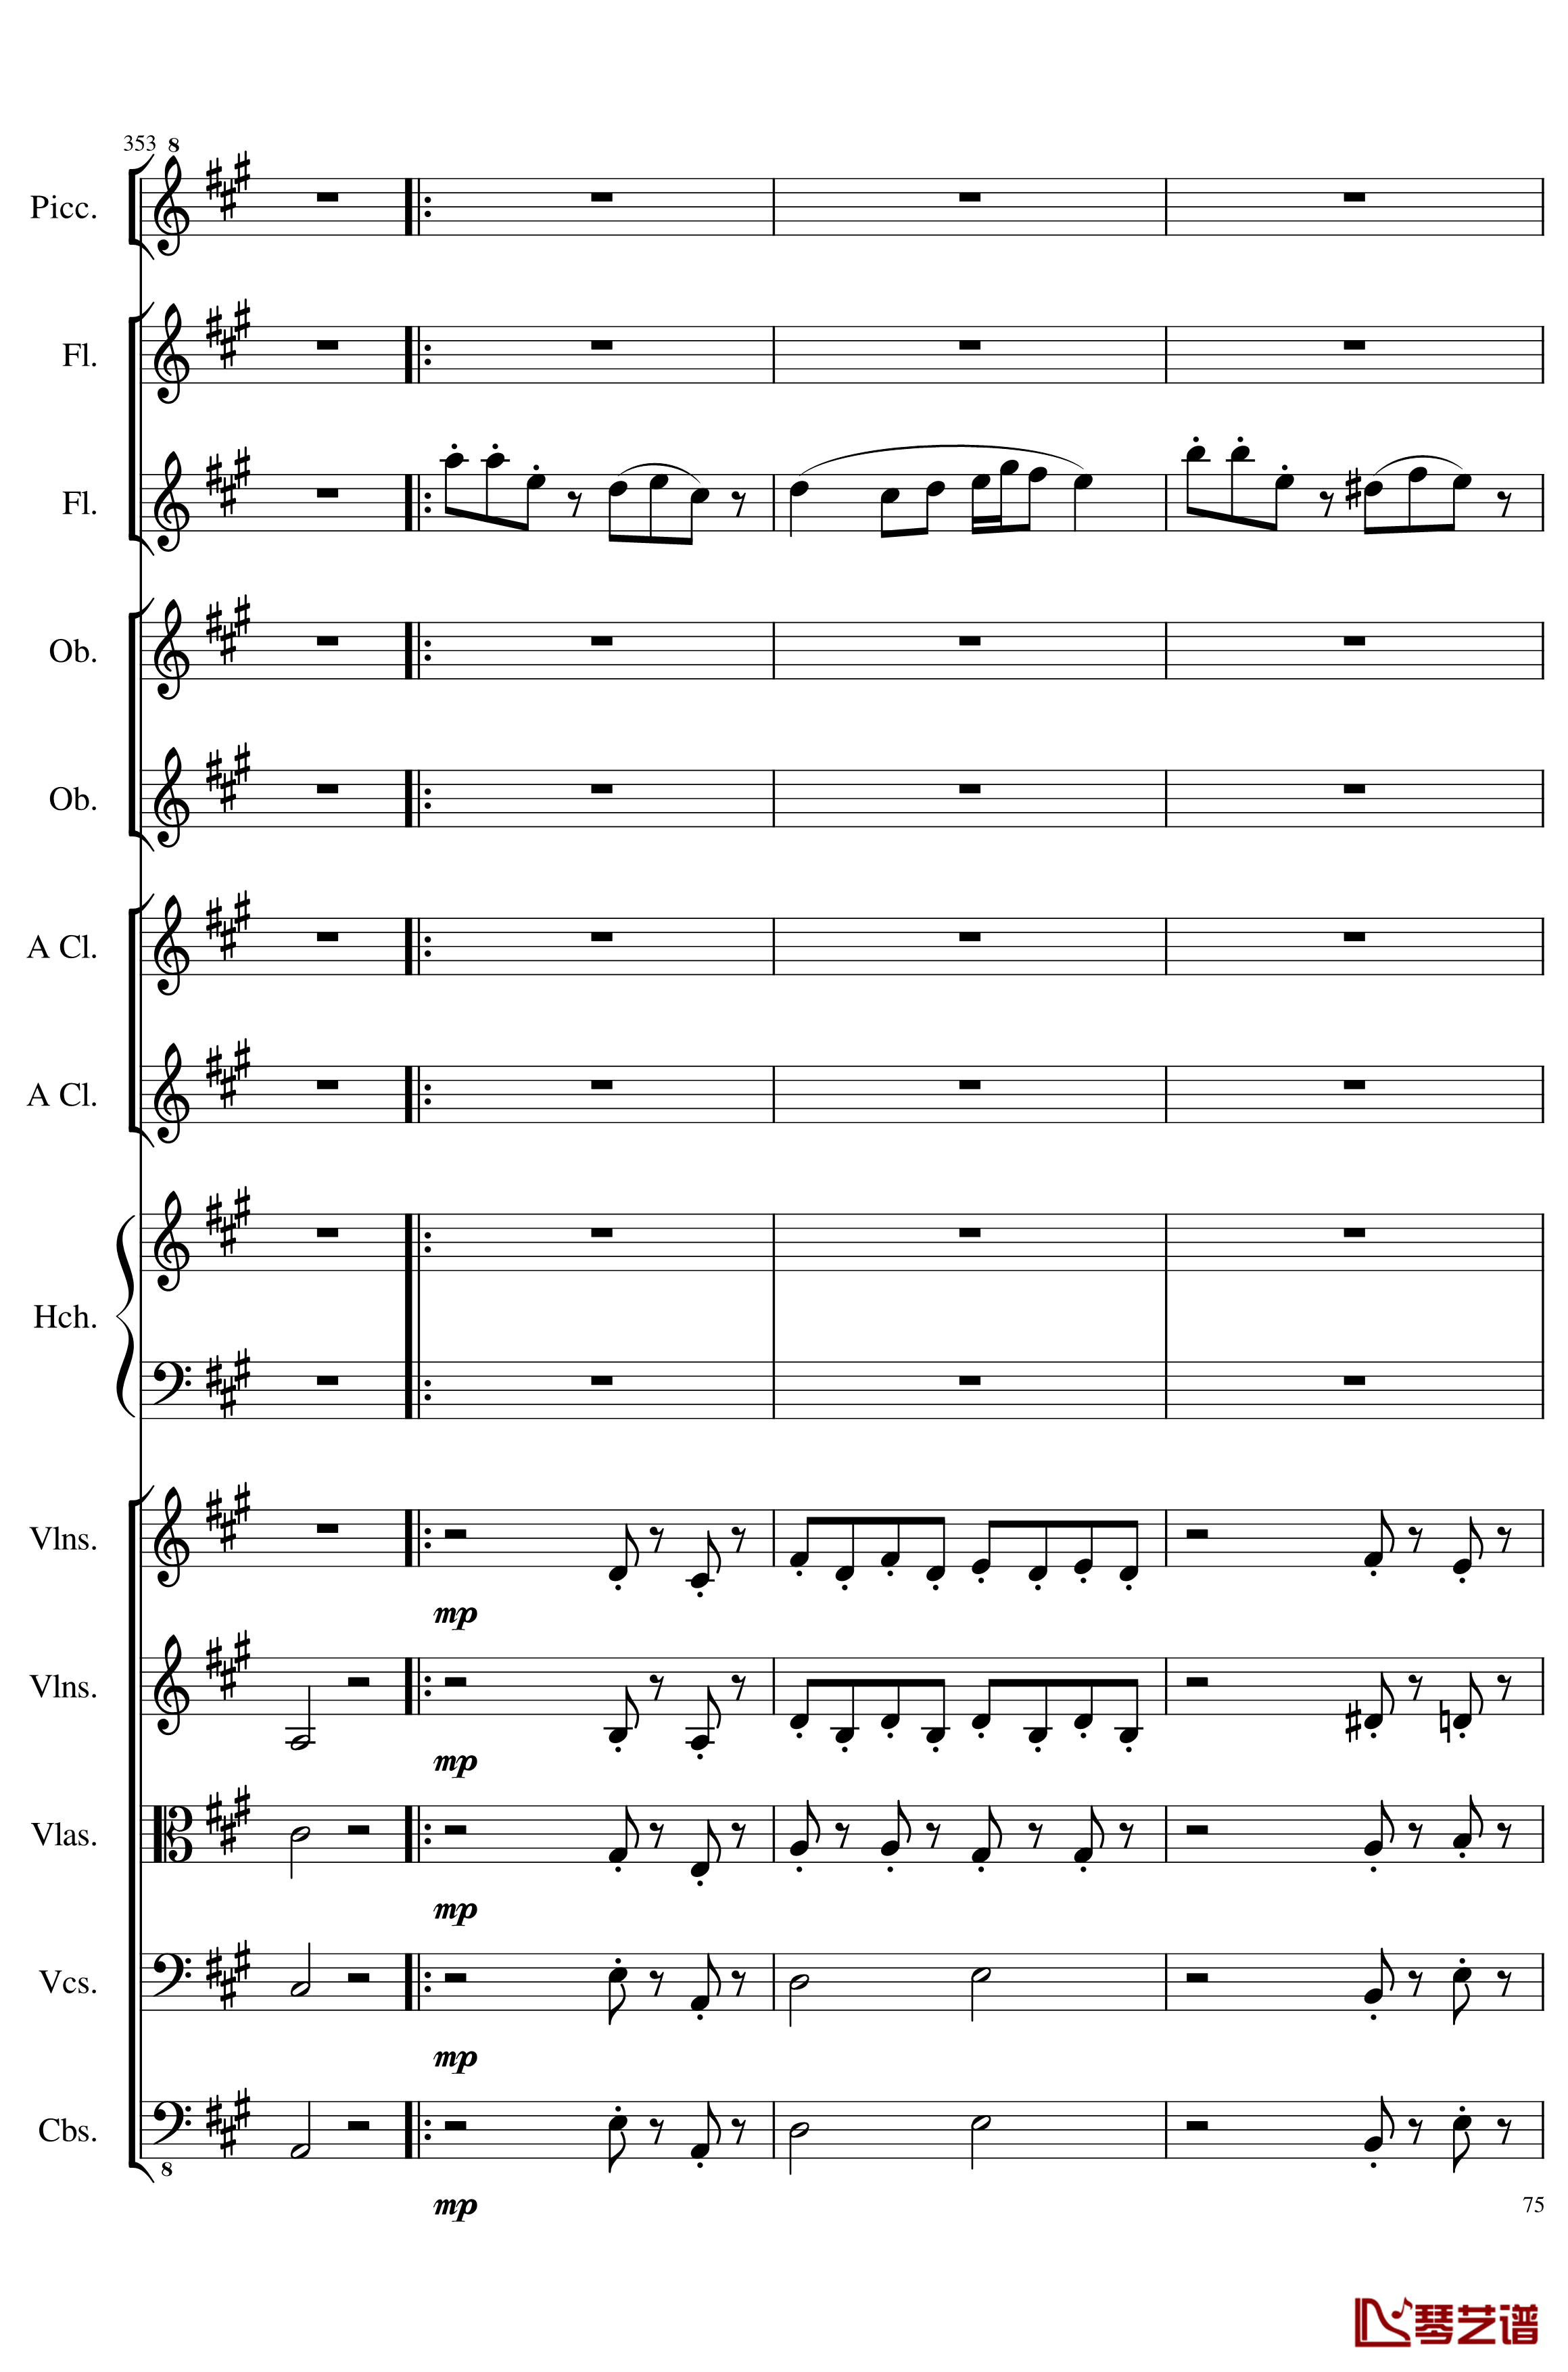 7 Contredanses No.1-7, Op.124钢琴谱-7首乡村舞曲，第一至第七，作品124-一个球75